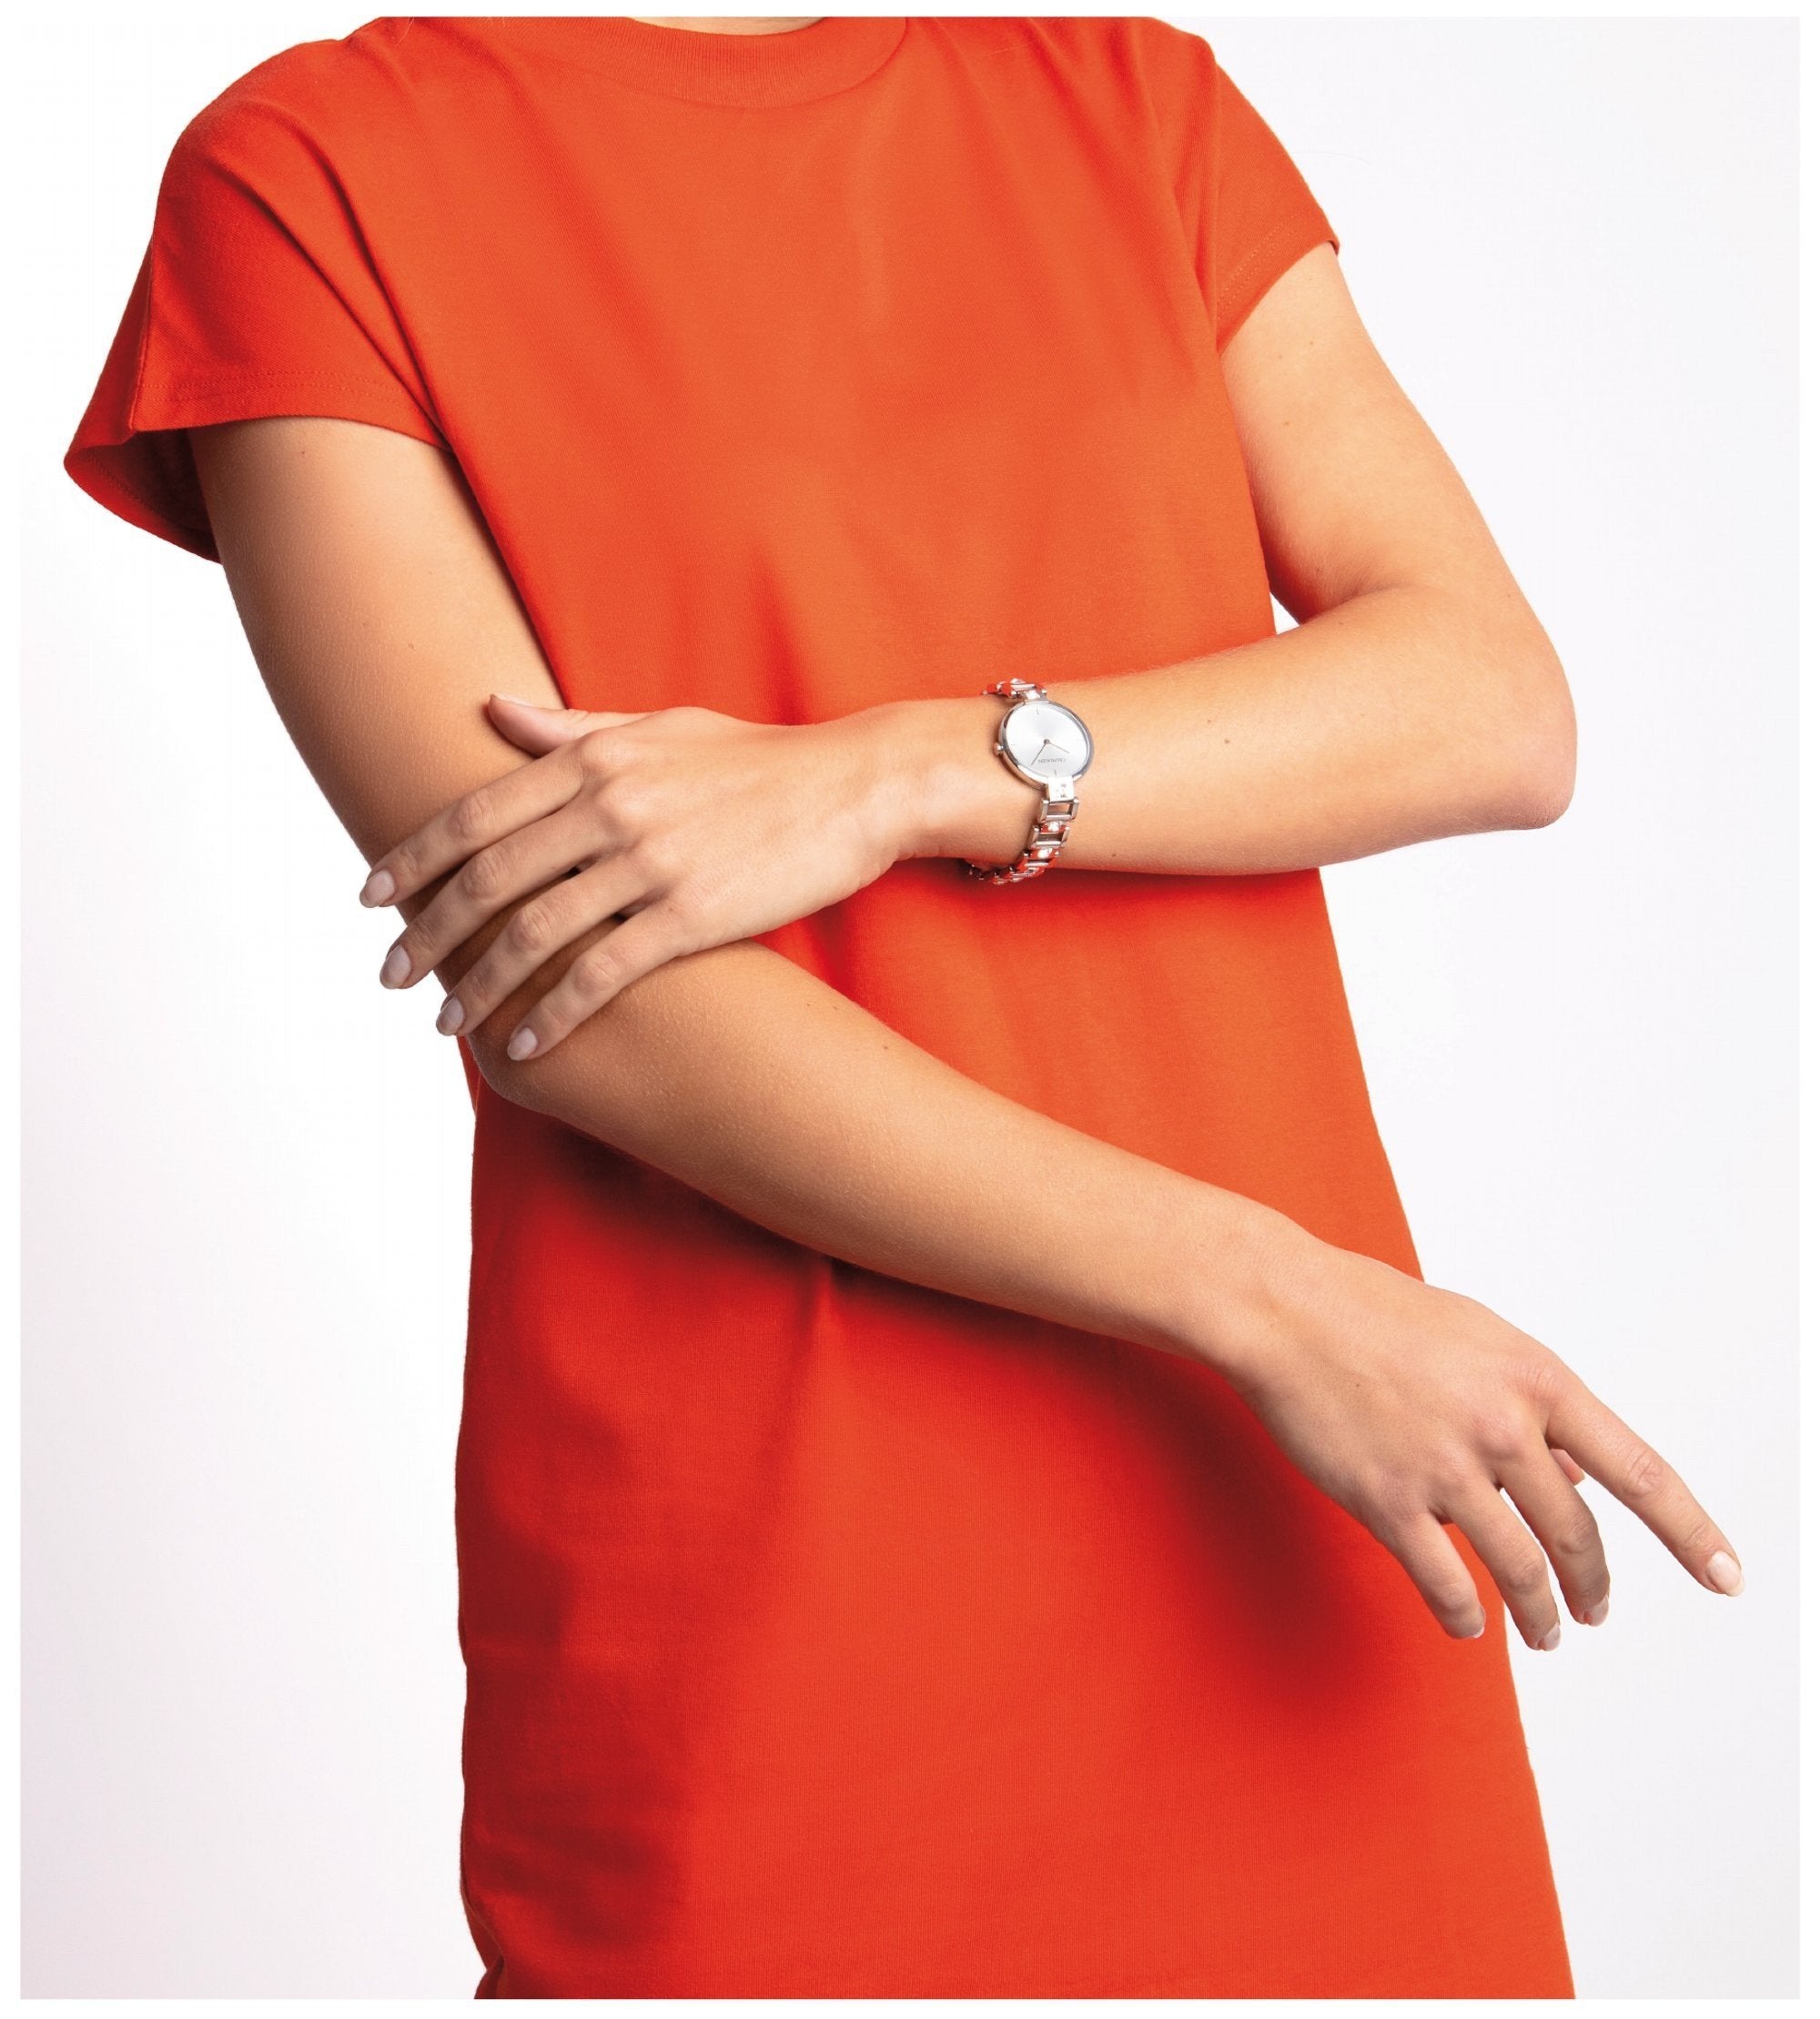 orologio Calvin Klein donna con pietre bianche MESMERIZE K9G23TK6 - bonini-gioielli